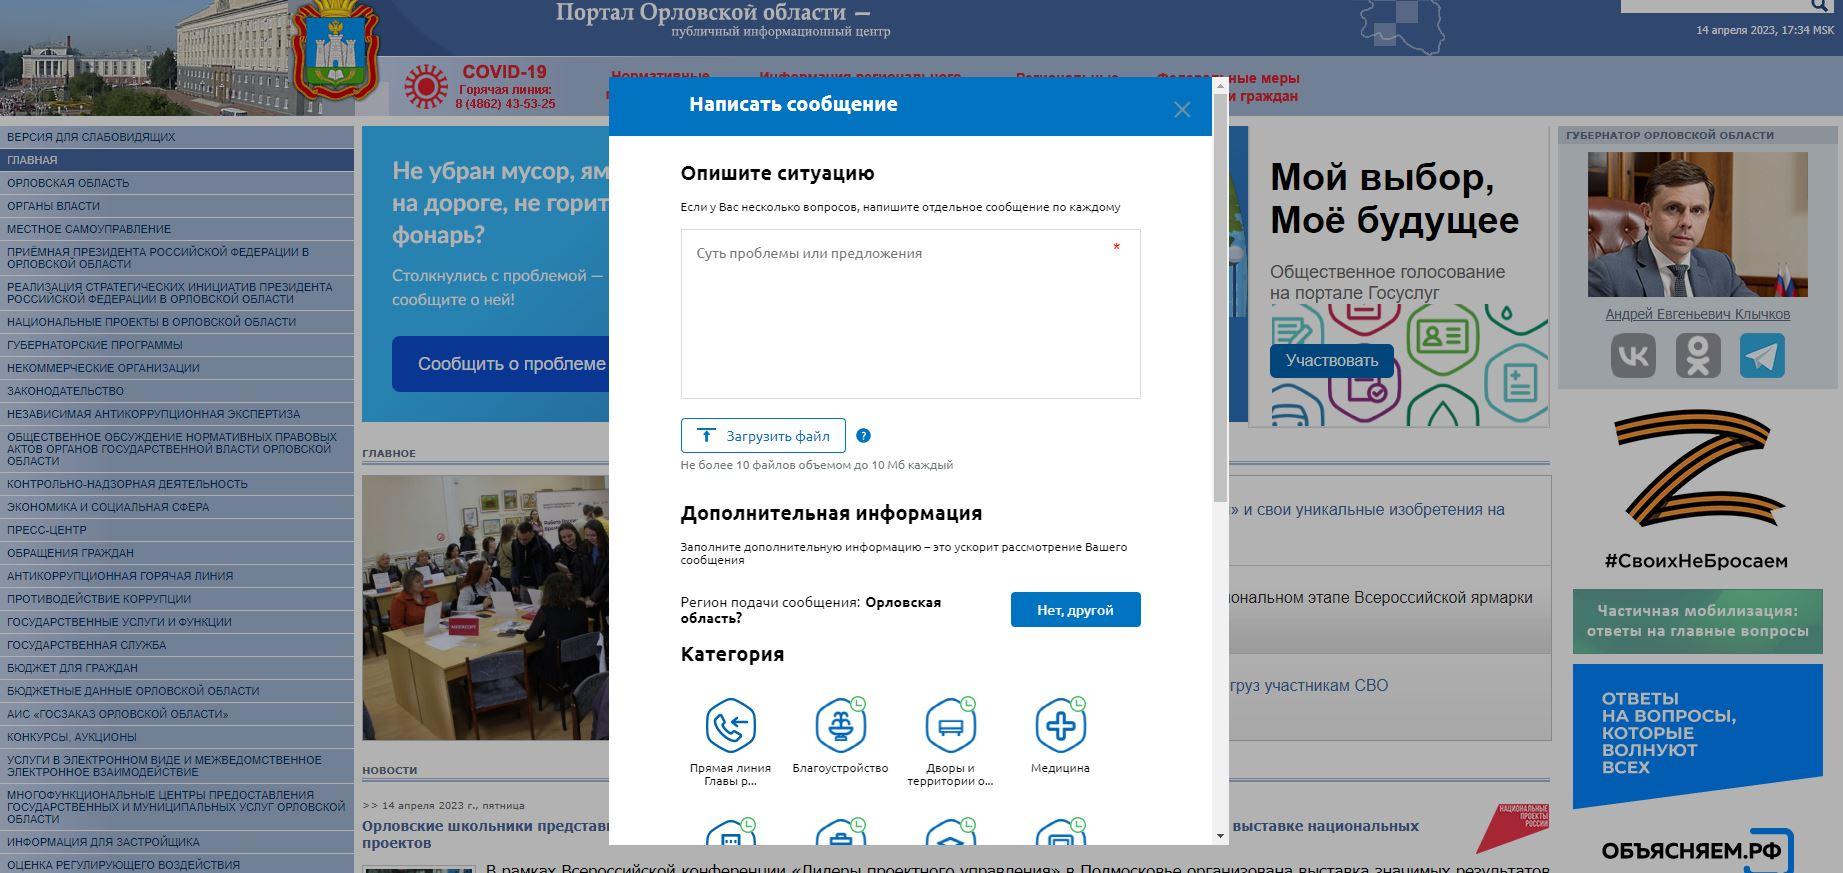 Более 2200 обращений от орловчан поступило в органы власти через платформу обратной связи «Госуслуги. Решаем вместе»